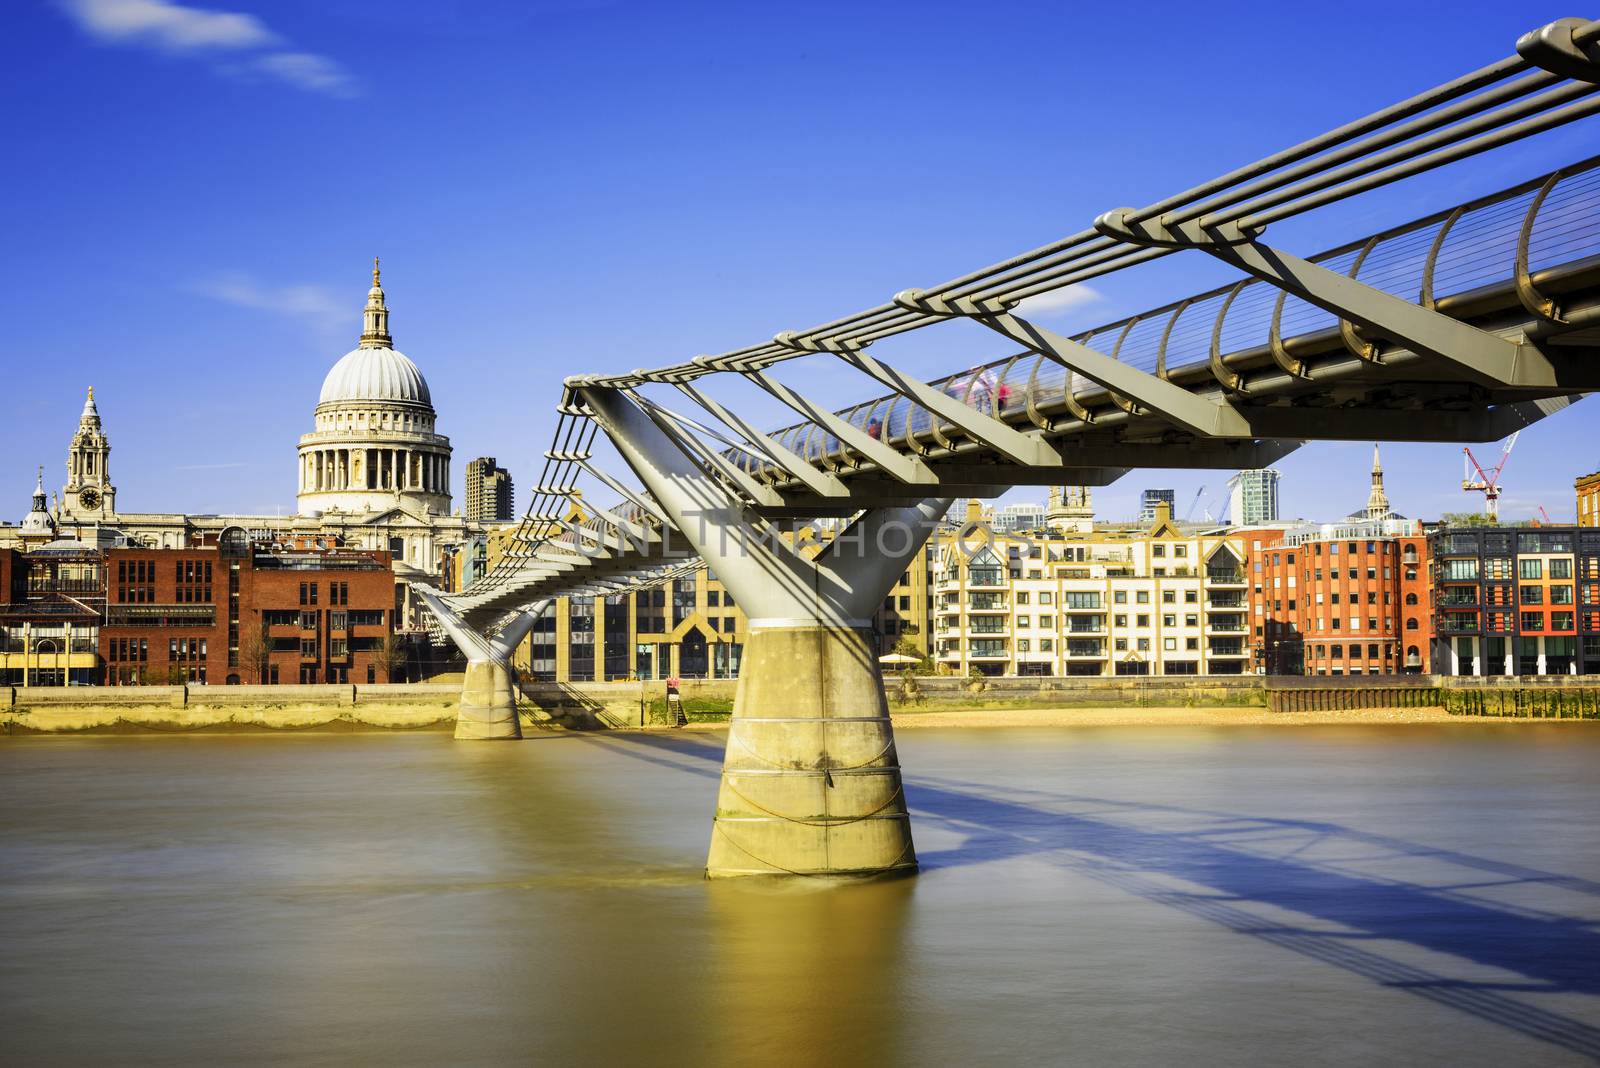 Millenium Bridge in London, England